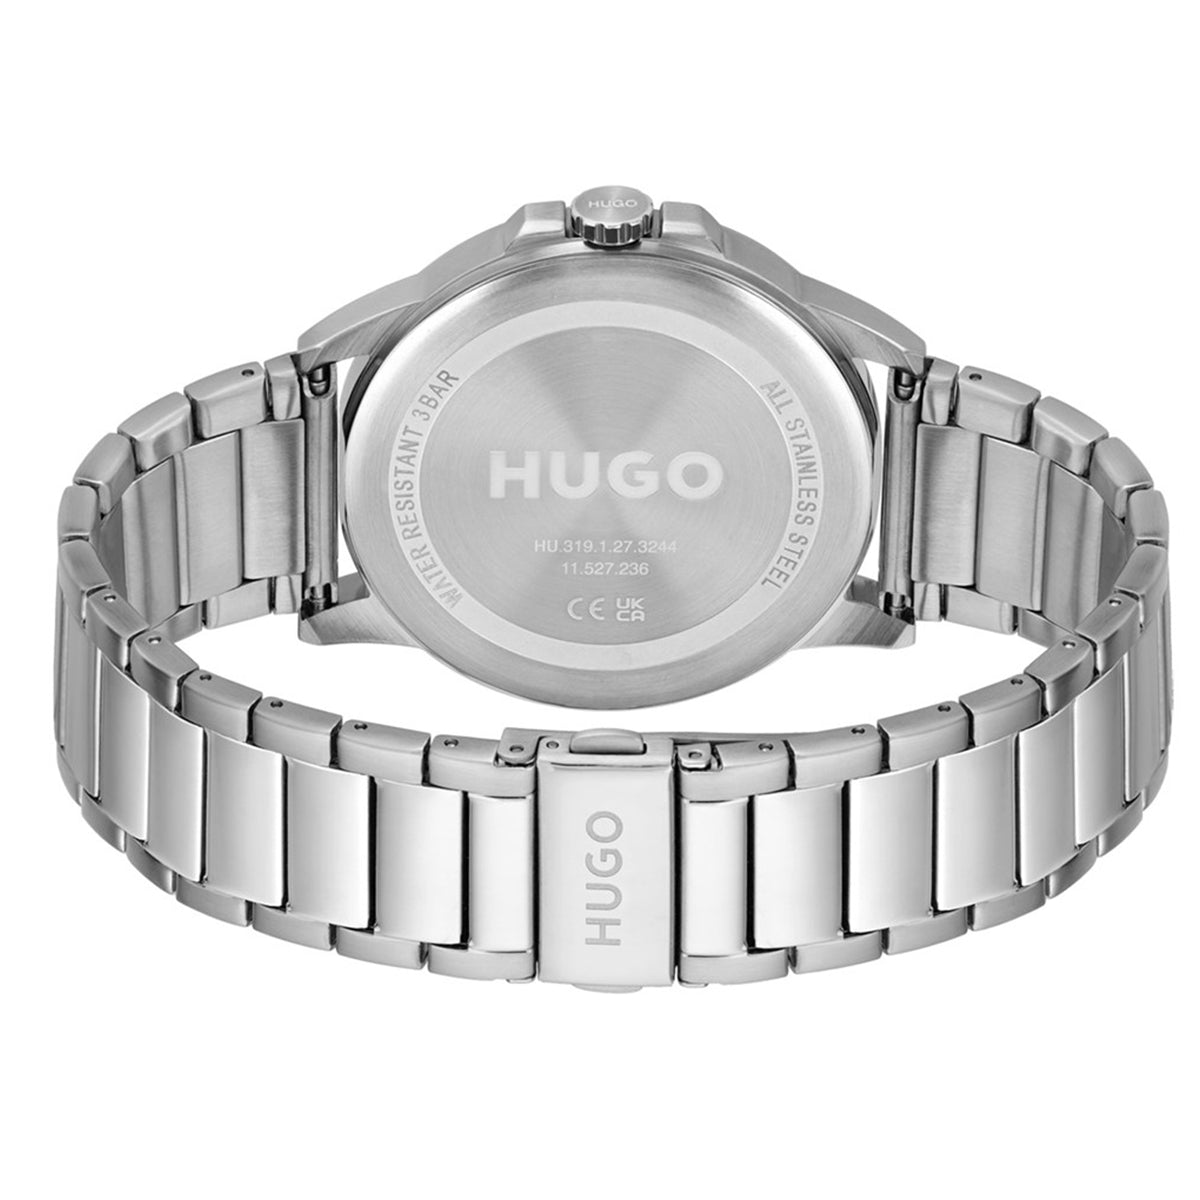 Hugo Boss - First - HB153.0246